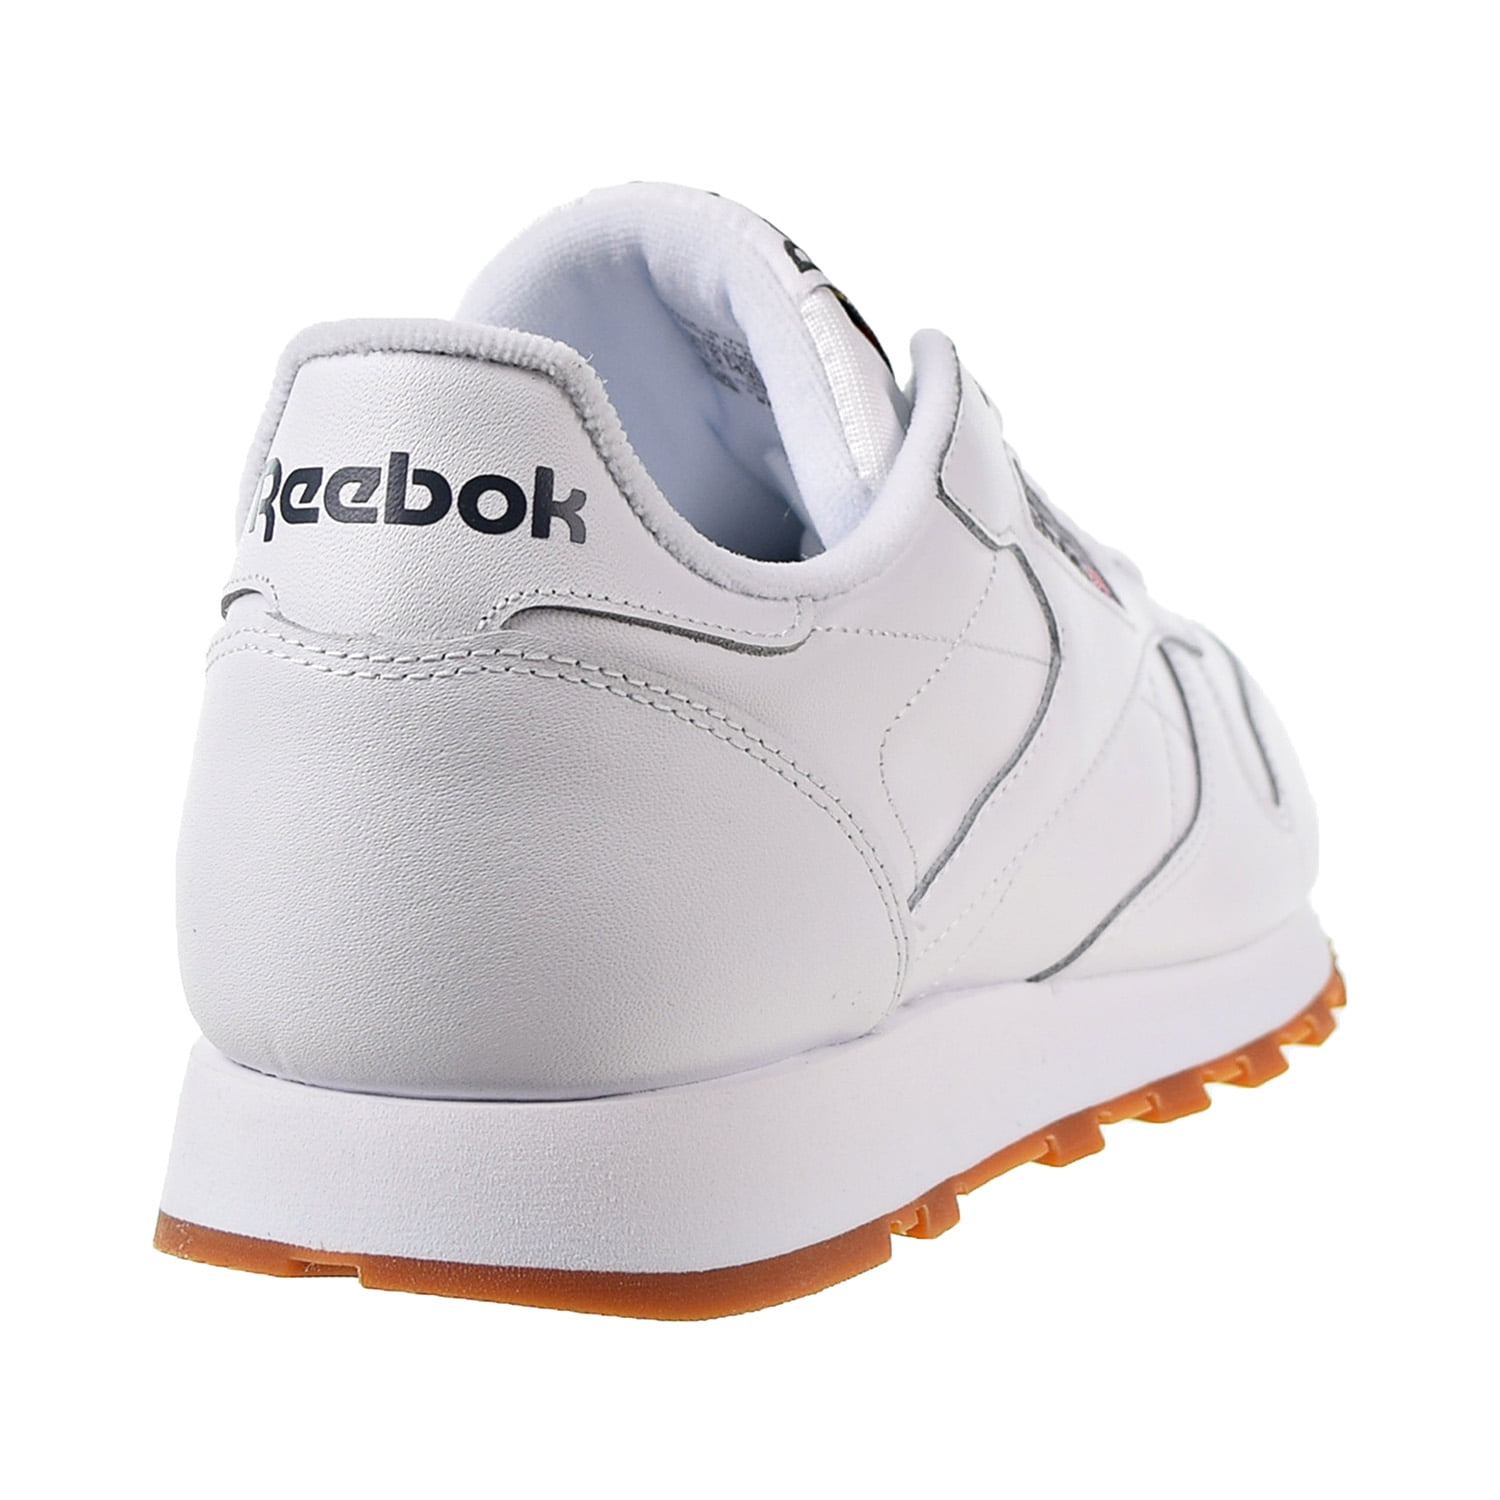 Lingvistik væsentligt Diagnose Reebok Classic Leather Men's Shoes Intense White-Gum 49799 - Walmart.com